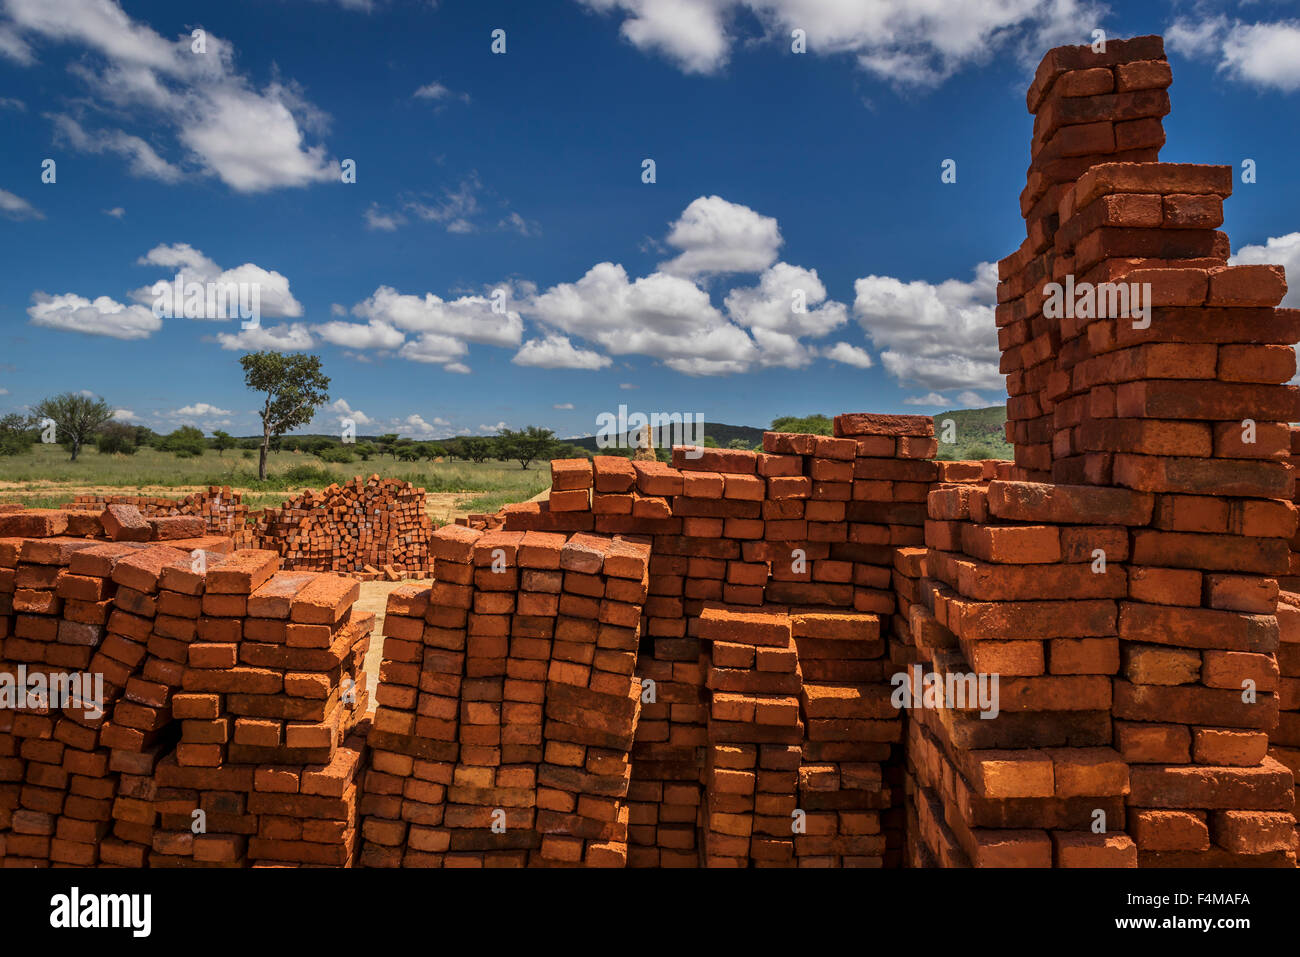 Briques empilés pour bâtiment, Okonjima, Namibie, Afrique Banque D'Images